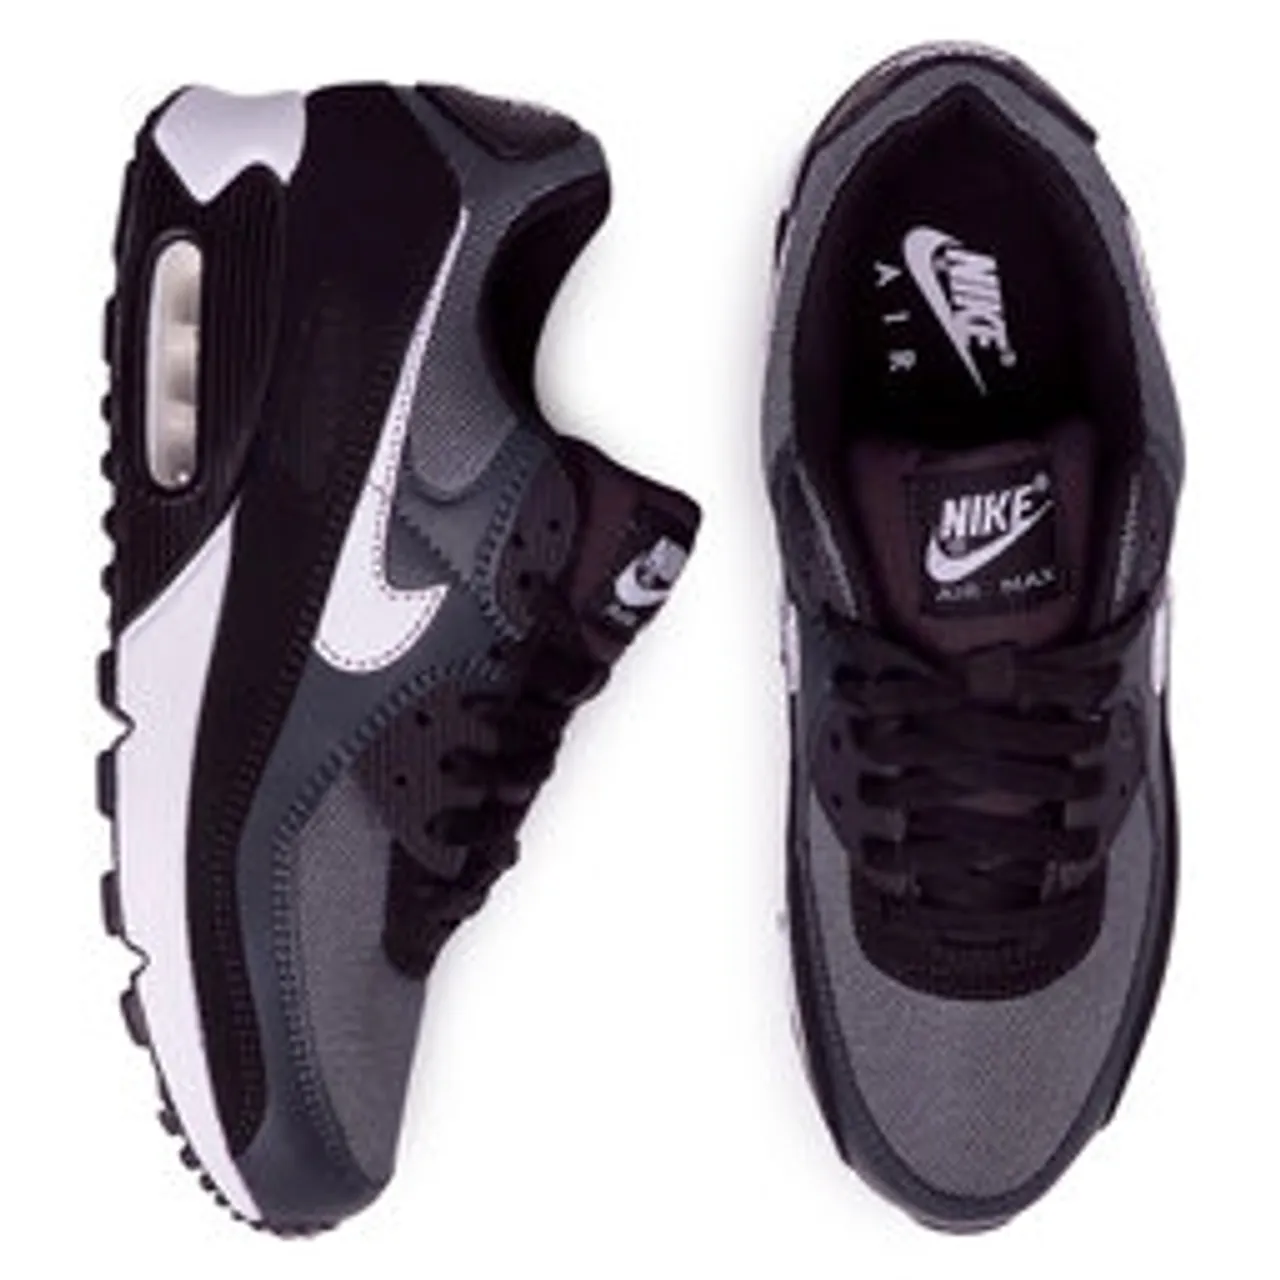 Sneakers Nike Air Max 90 CN8490 002 Grau